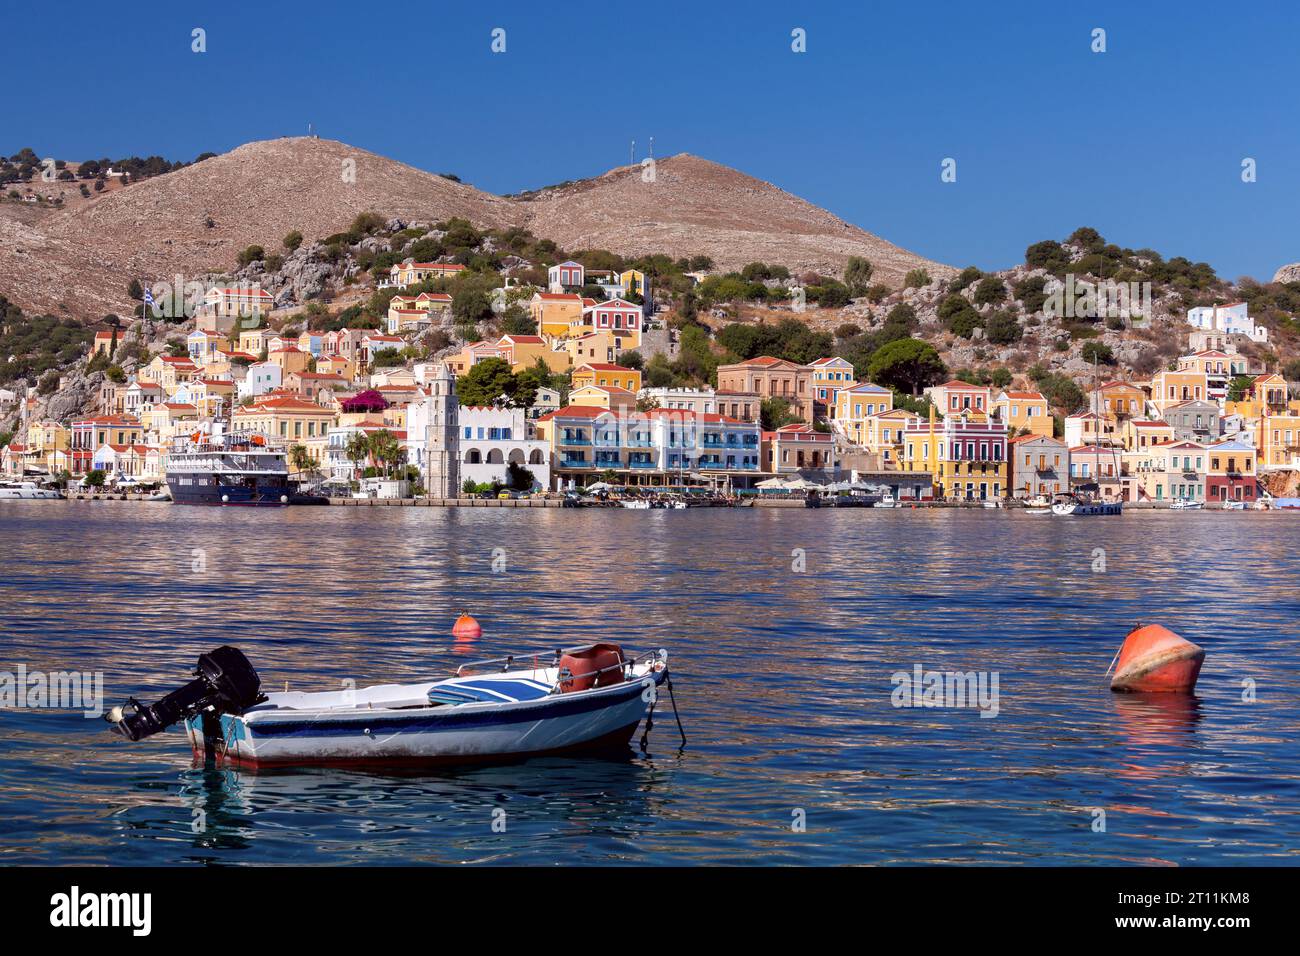 Case tradizionali colorate nel villaggio greco di Symi sulla riva di una baia in una giornata di sole. Grecia. Foto Stock